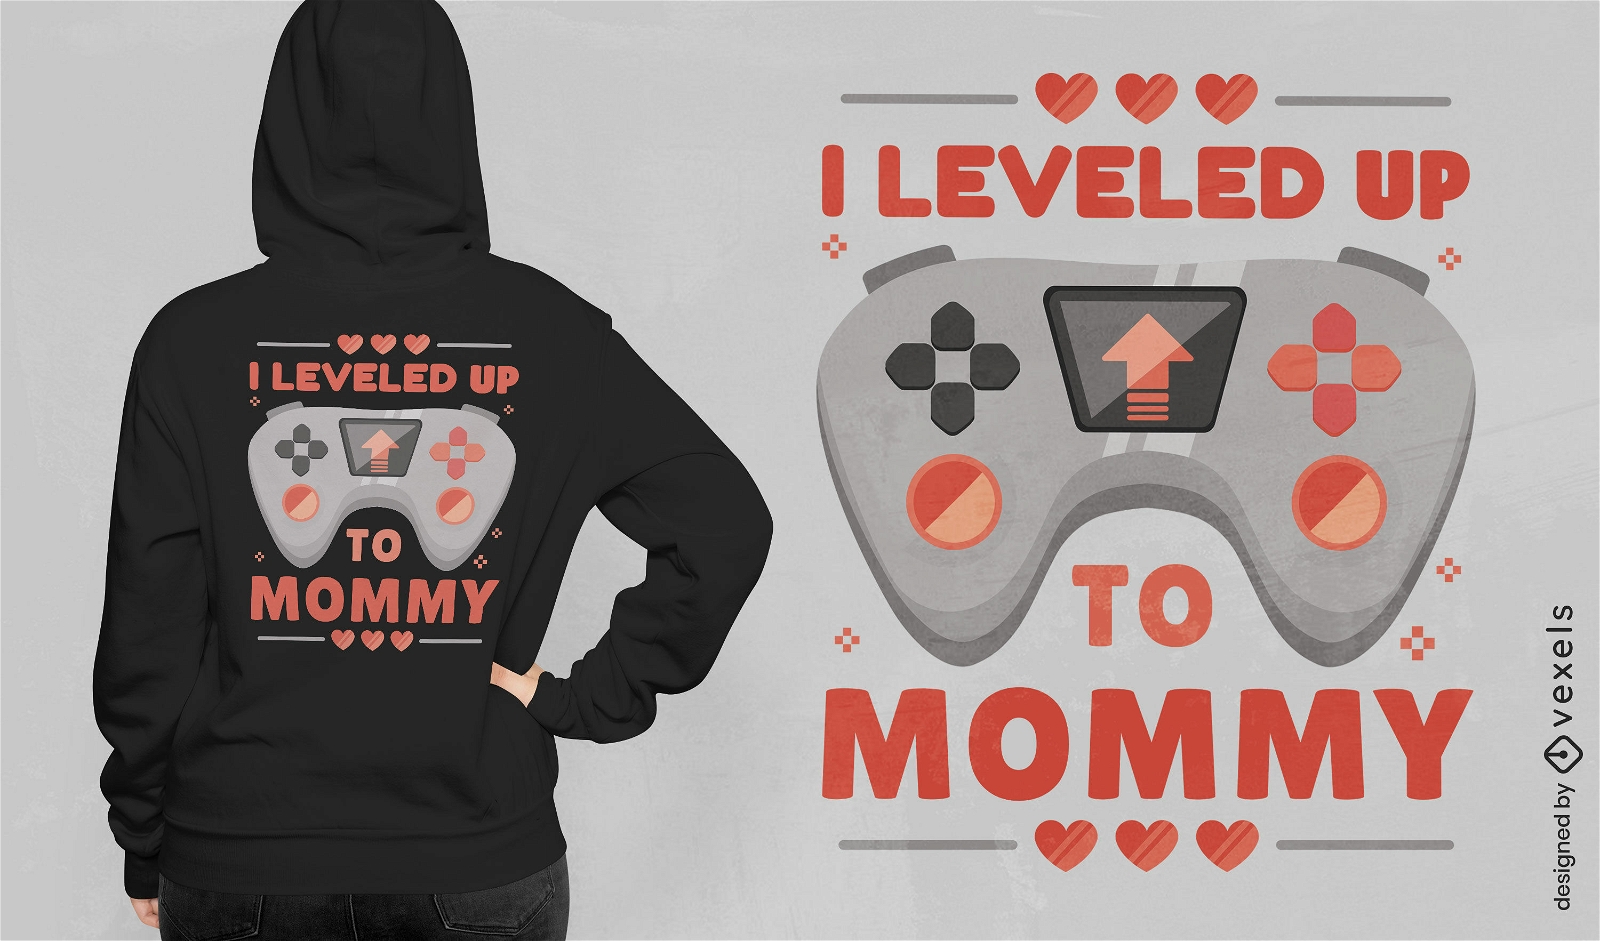 Diseño de camiseta desbloqueada con nivel de mamá de joystick